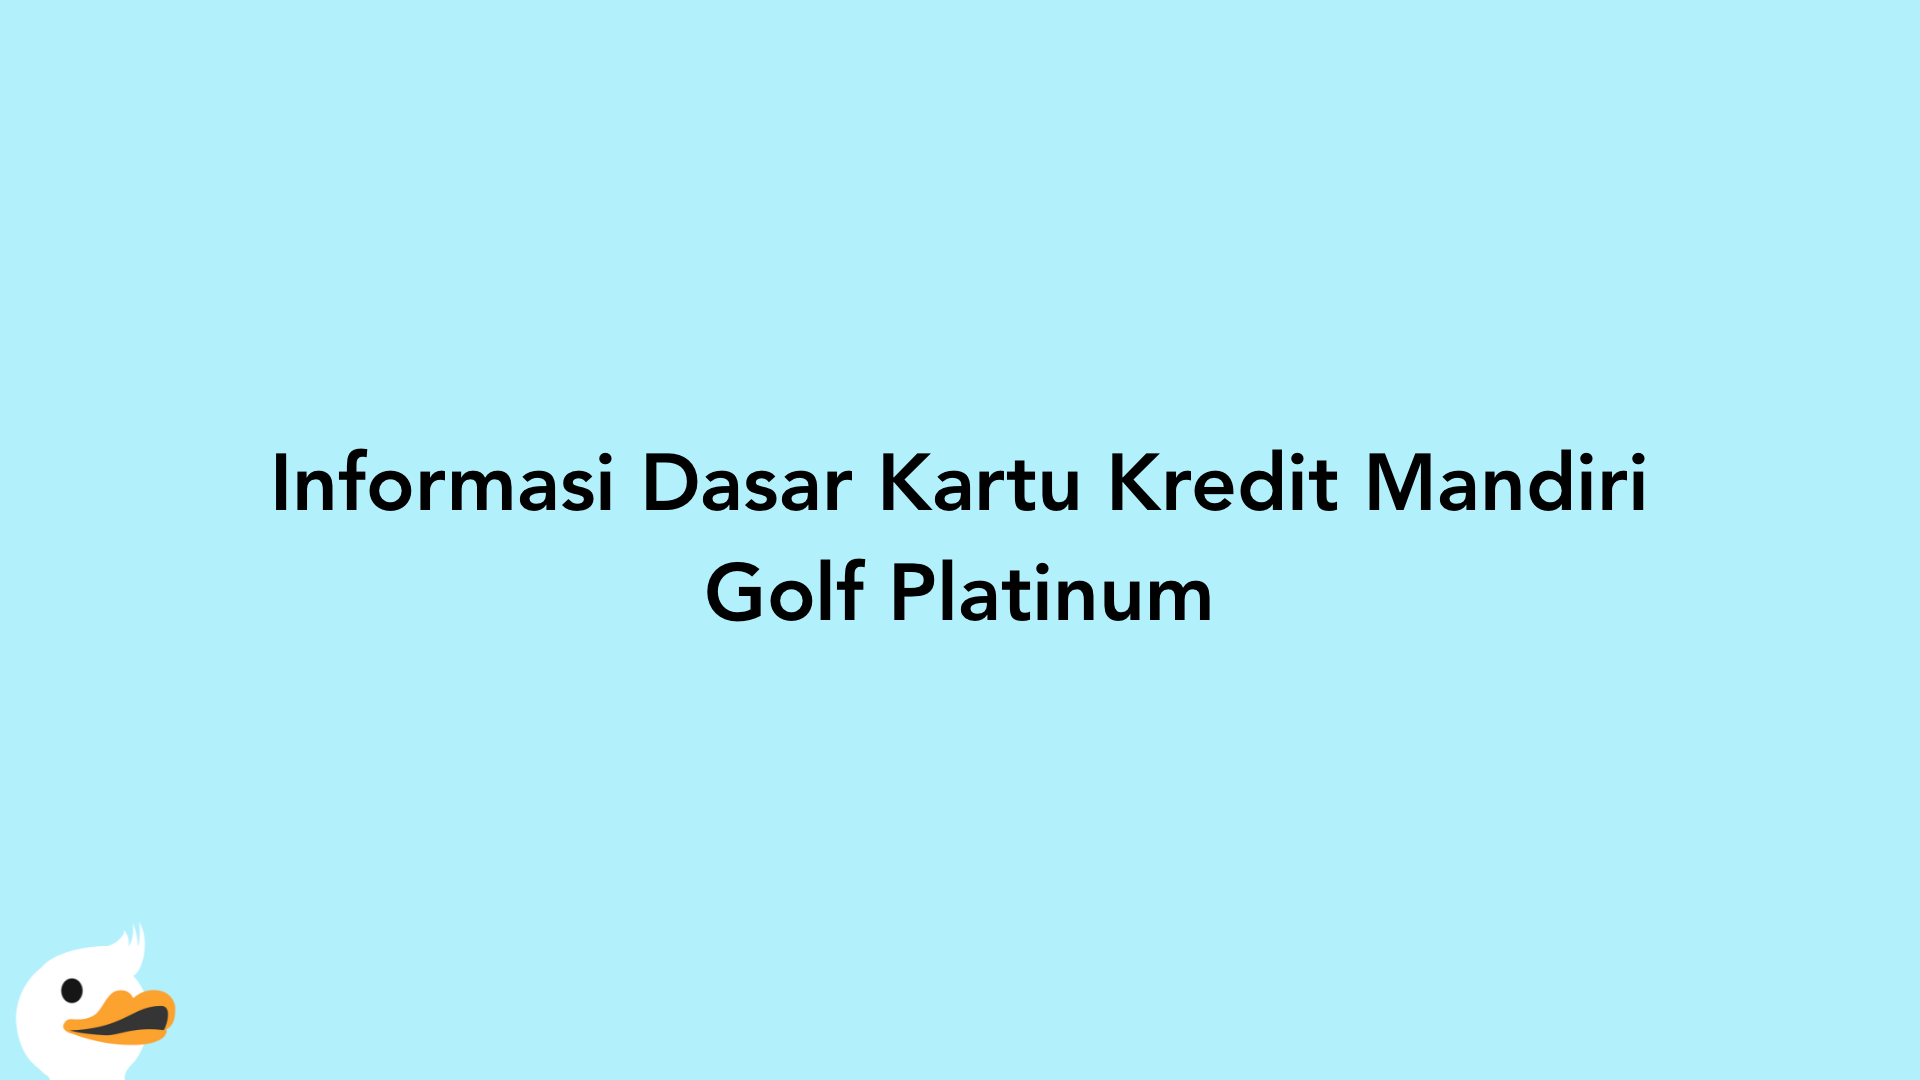 Informasi Dasar Kartu Kredit Mandiri Golf Platinum